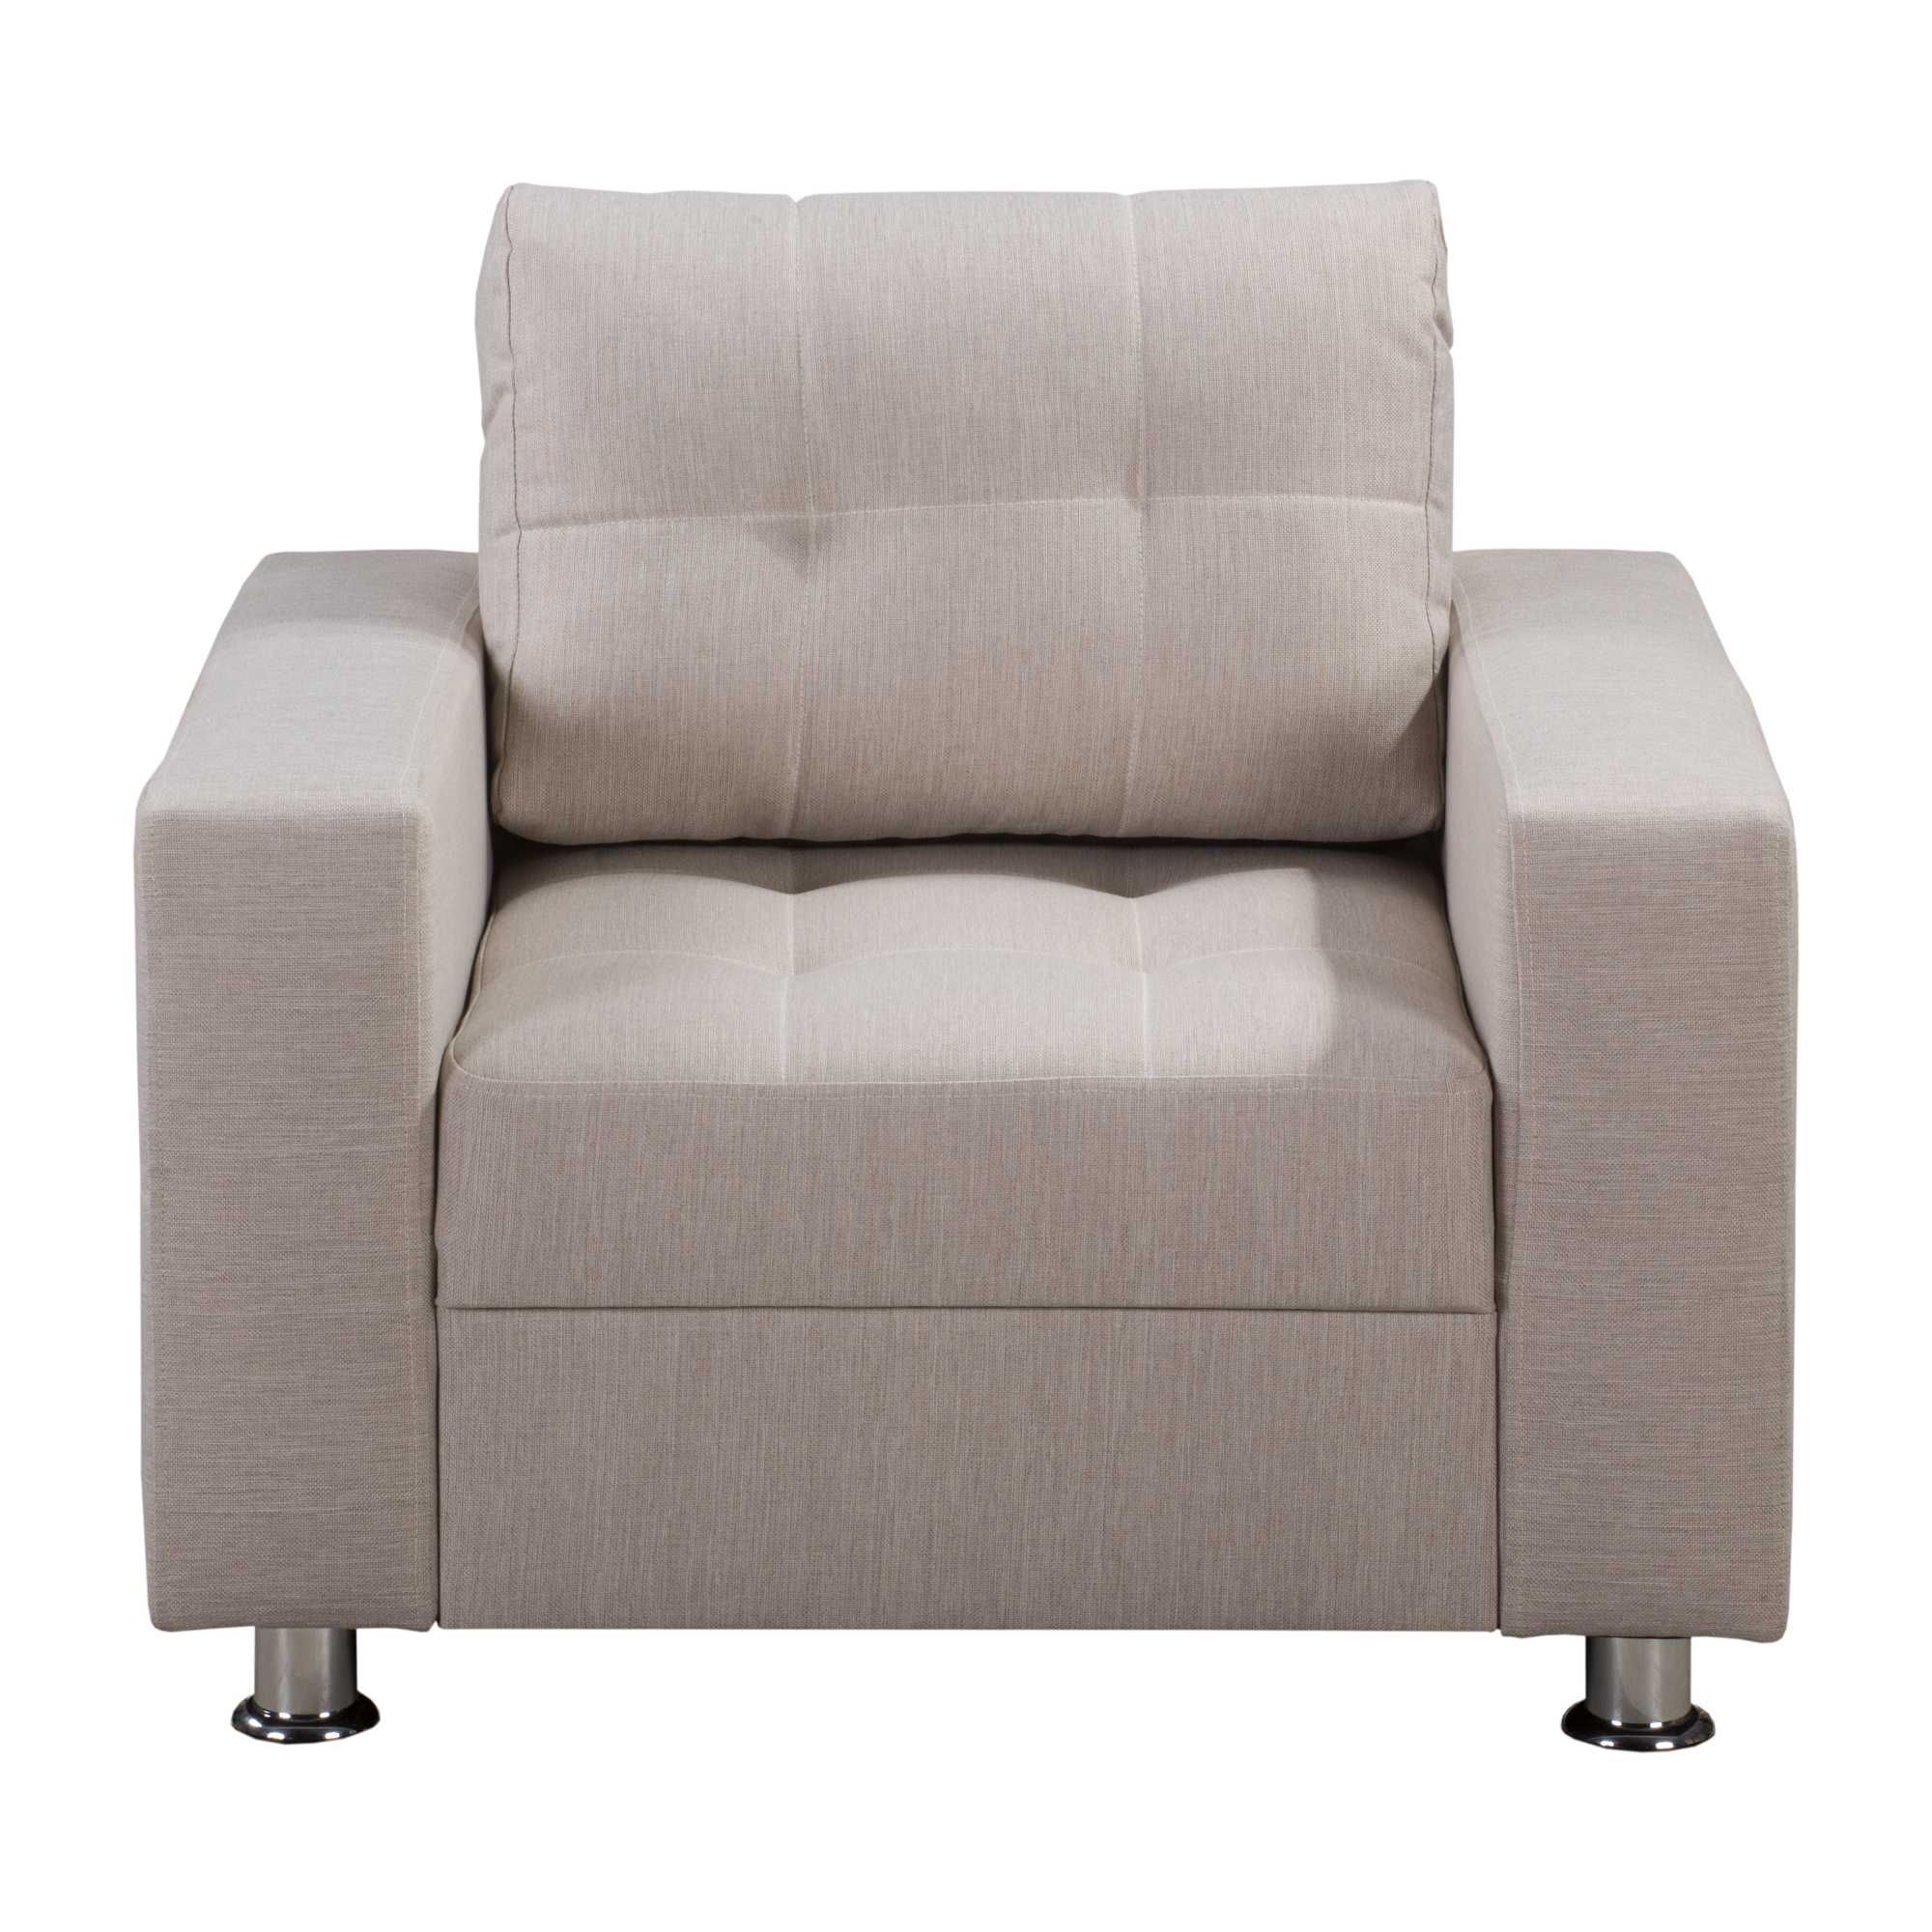 WYPRZEDAŻ nowy fotel z podnóżkiem 2 kolory - PROMOCJA -60%